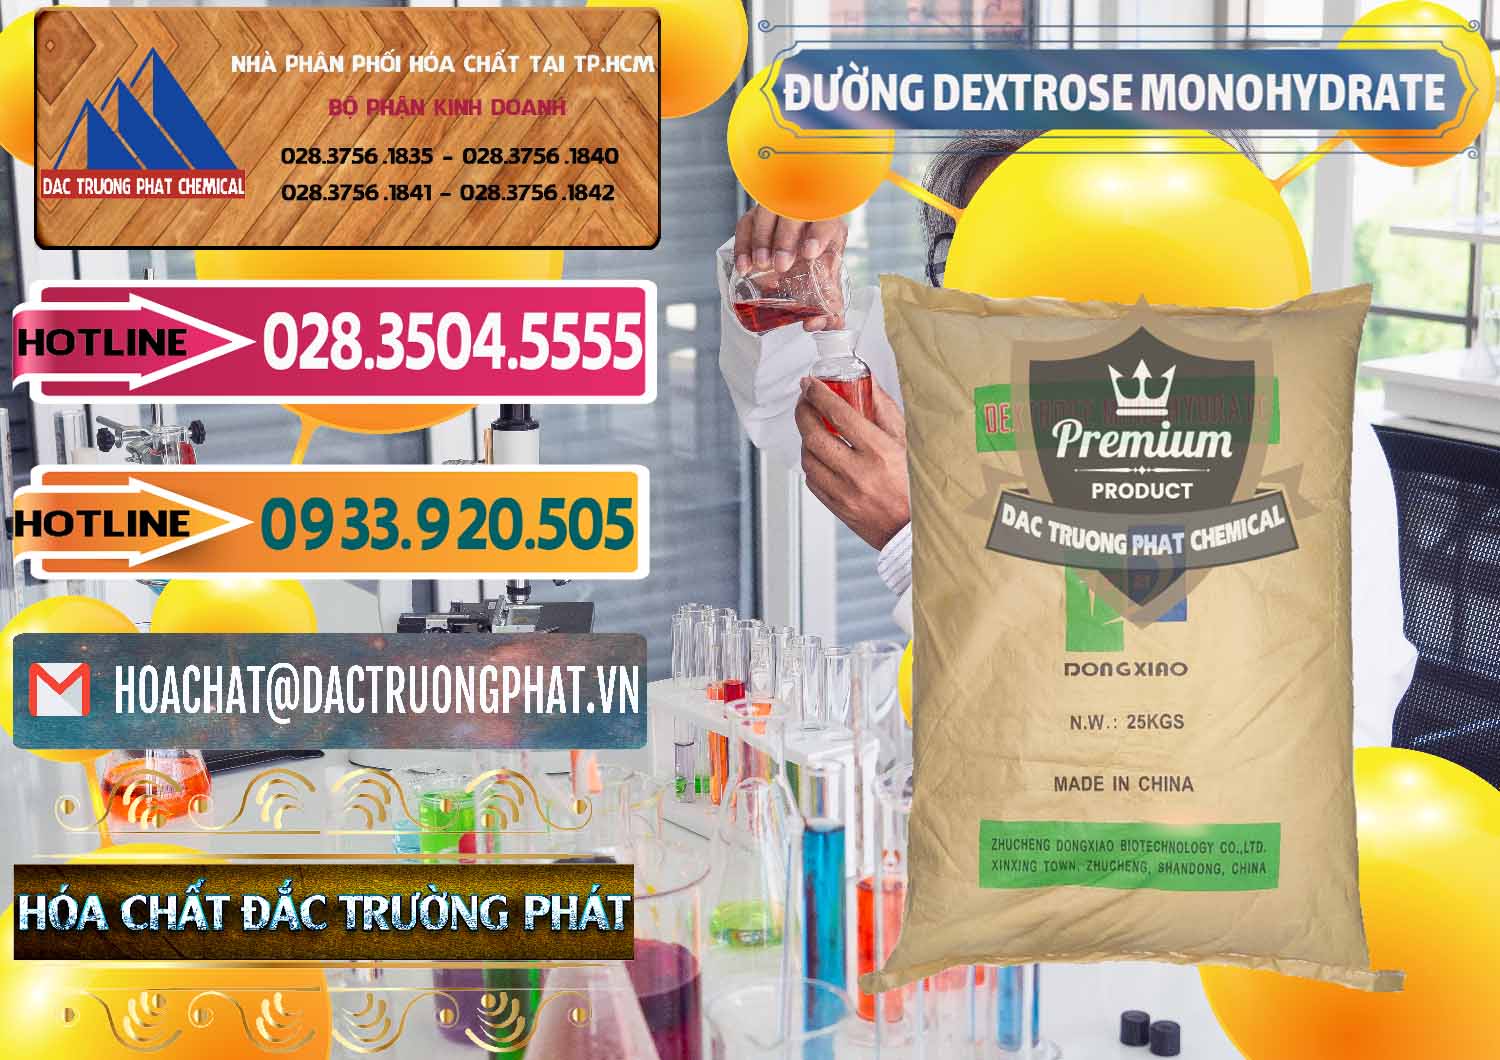 Đơn vị phân phối & bán Đường Dextrose Monohydrate Food Grade Dongxiao Trung Quốc China - 0063 - Đơn vị chuyên phân phối ( nhập khẩu ) hóa chất tại TP.HCM - dactruongphat.vn